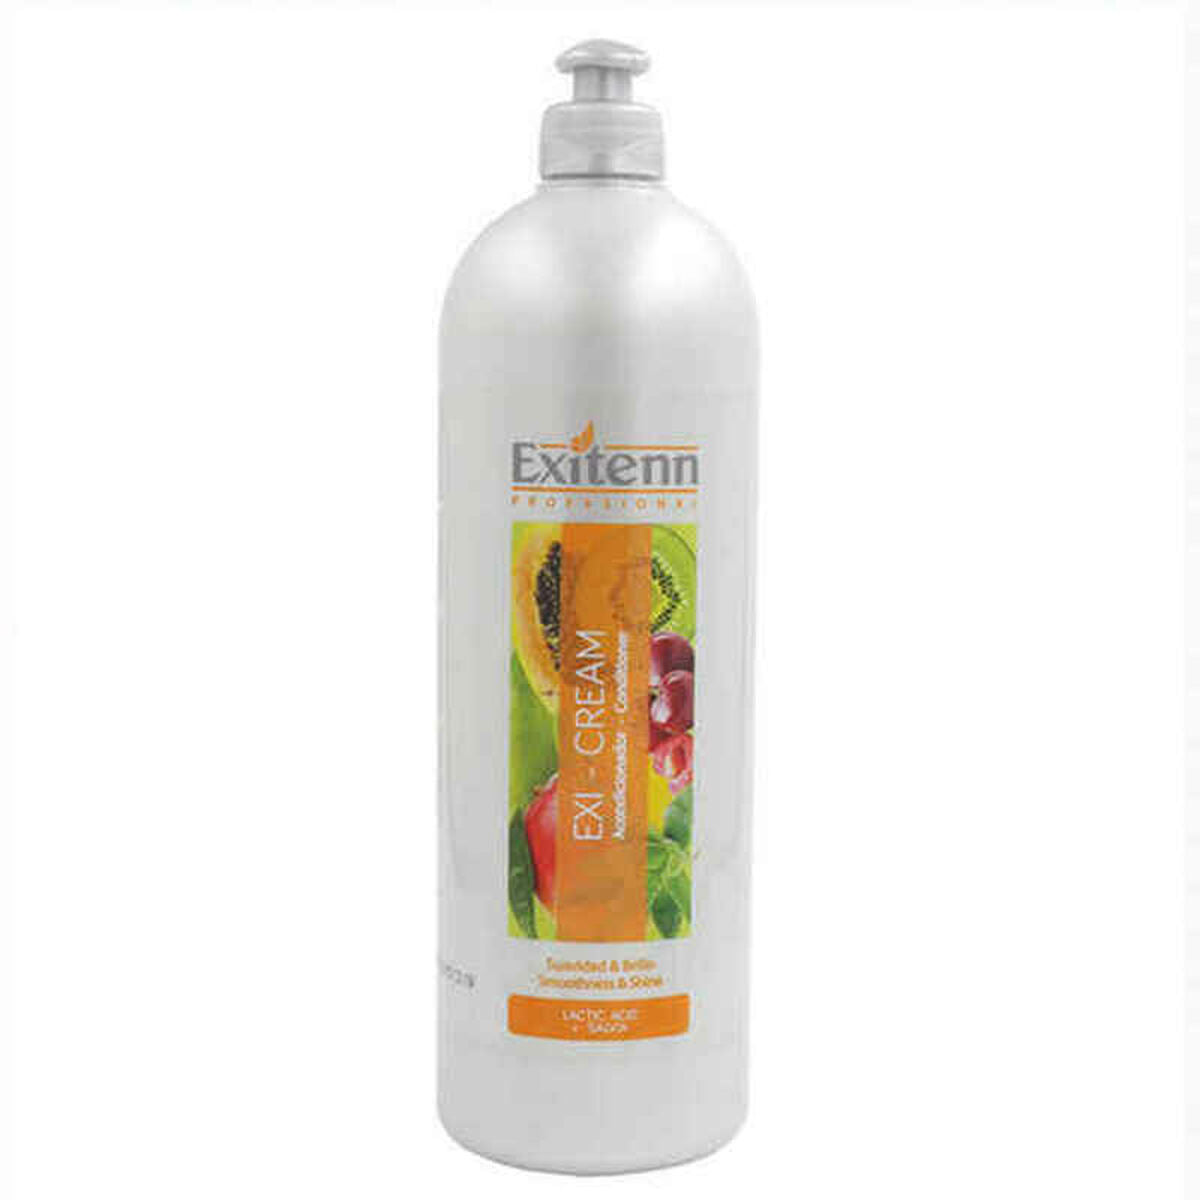 Conditioner Exi-Cream Exitenn Exi-cream Suavizante (1000 ml)